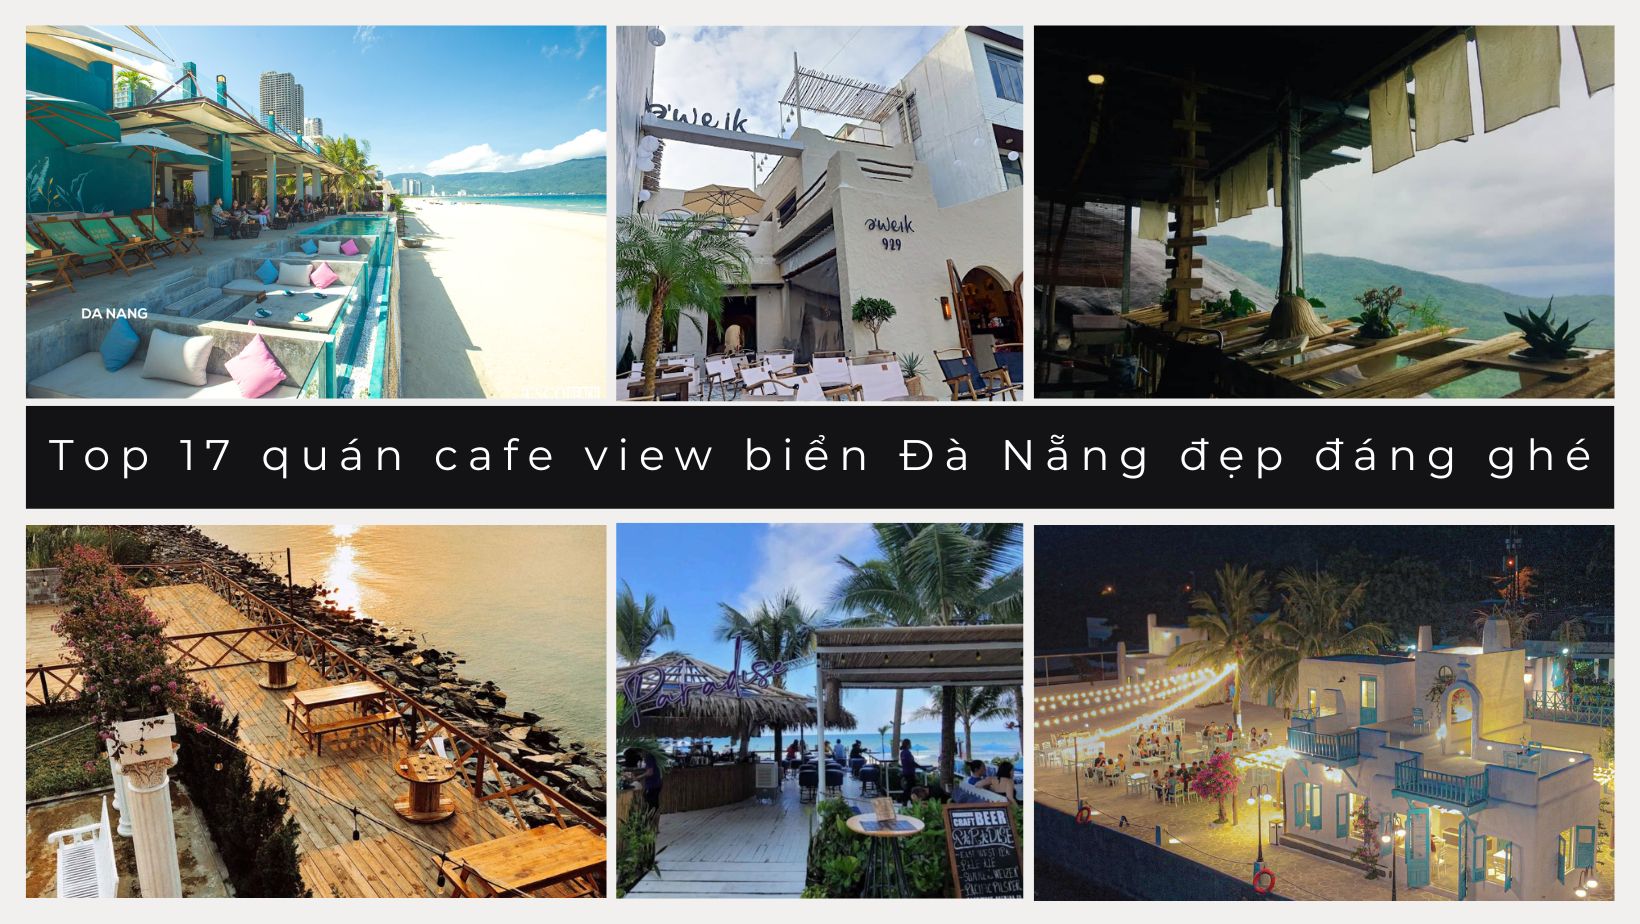 Khám phá 17 địa chỉ cafe cá koi đà nẵng có view đẹp nhất